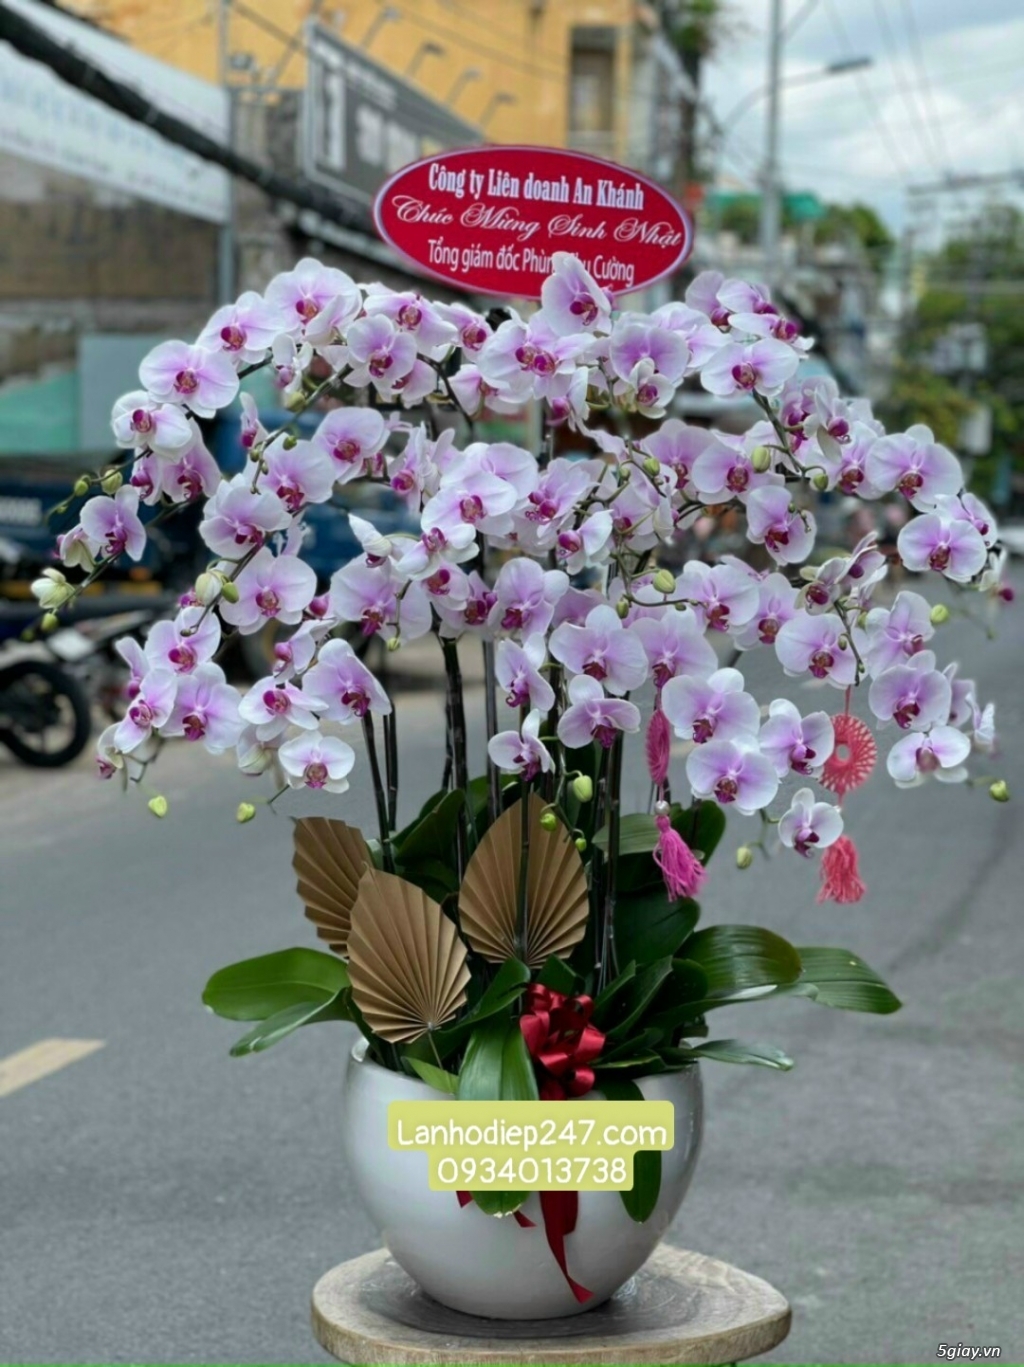 Shop hoa lan uy tín nhất tphcm chuyên phân phối Lan Hồ Điệp cao cấp - 13